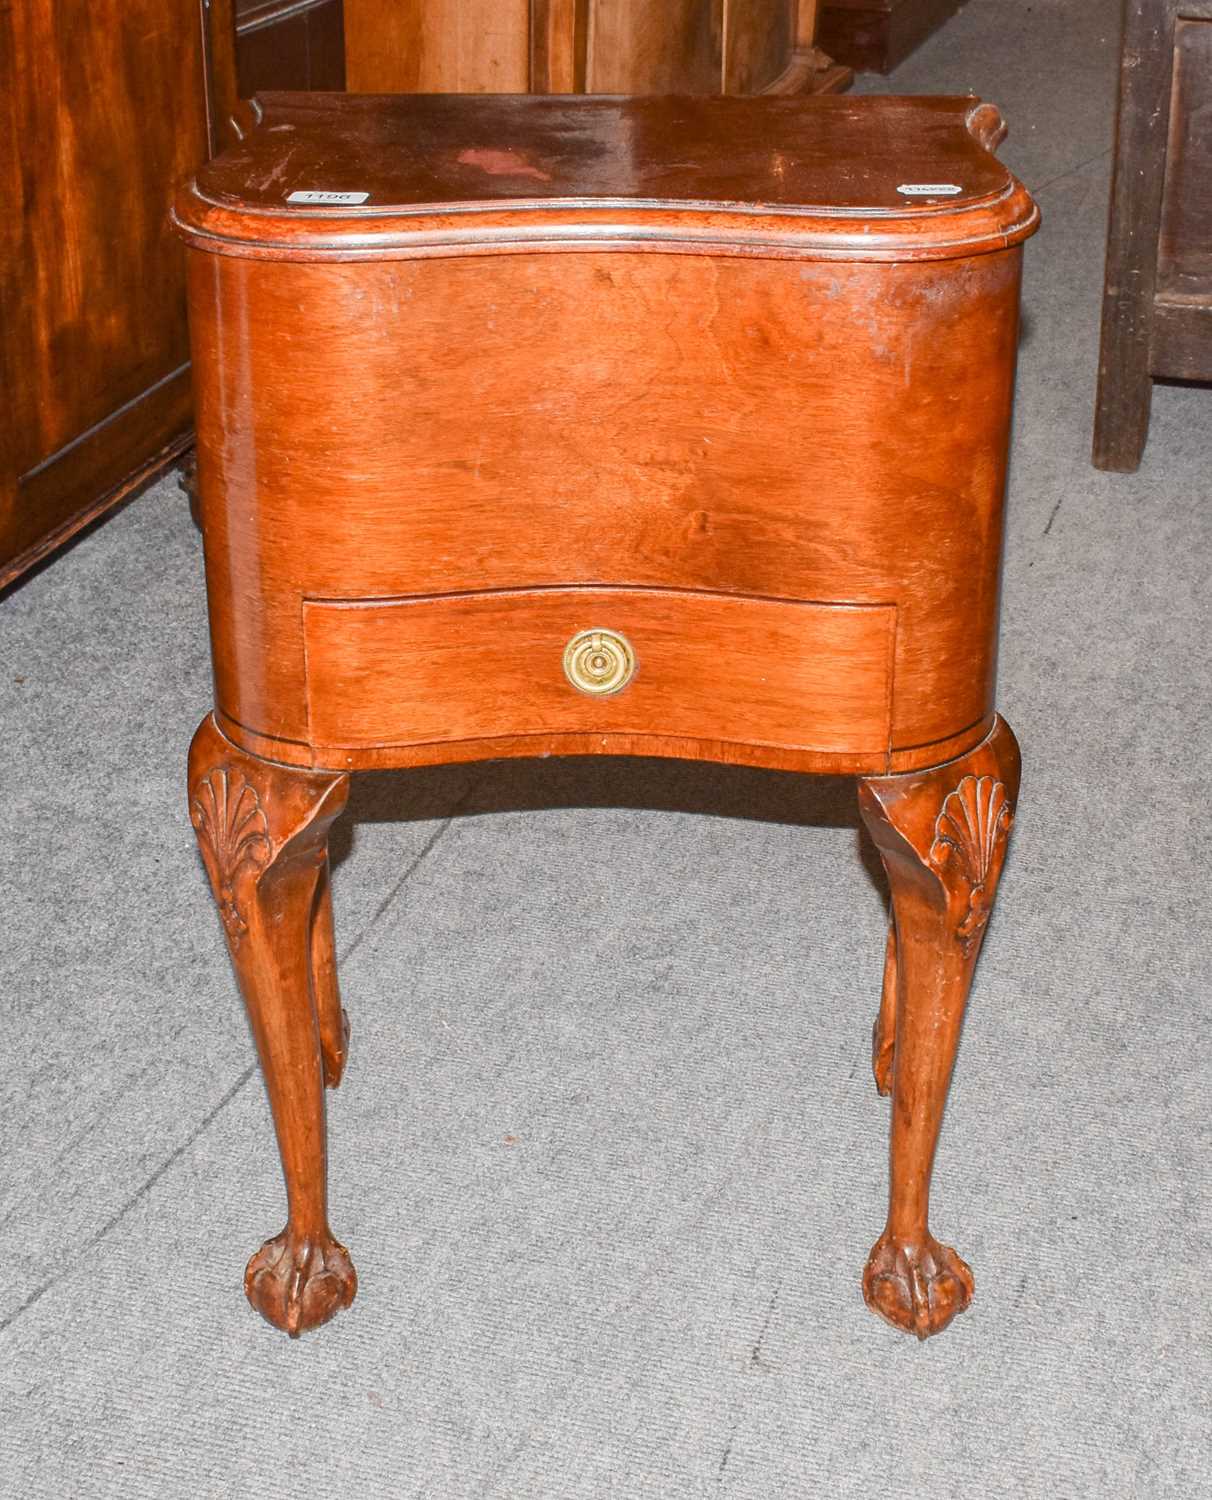 Lot 1224 - A walnut sewing box, 47cm by 32cm by 68cm